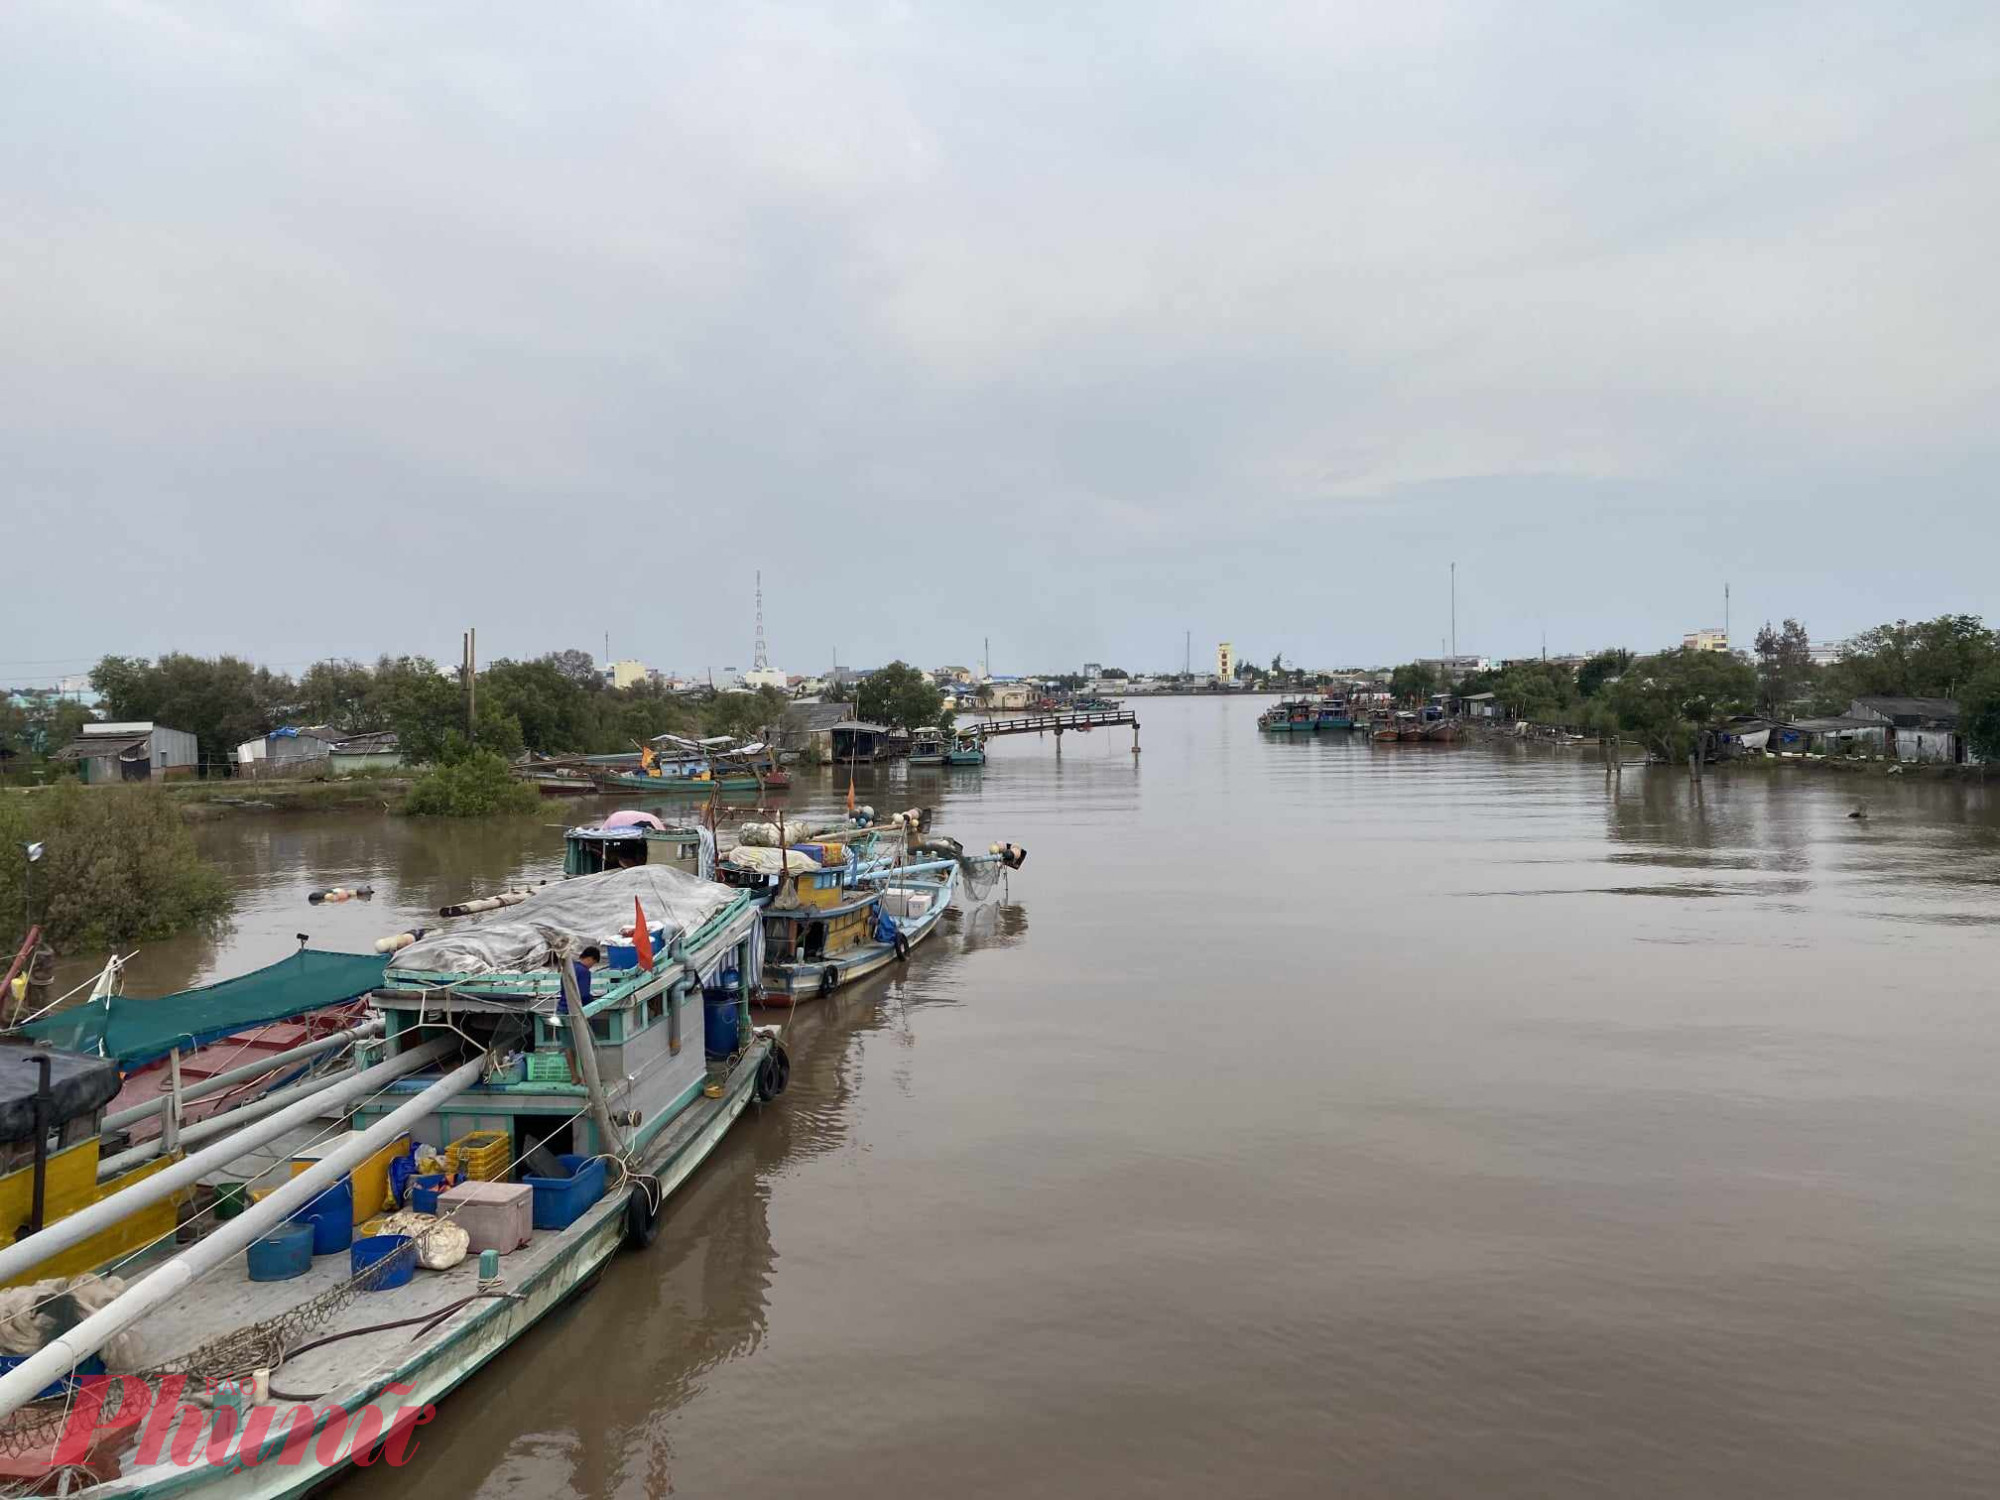 Một đoạn ngã ba sông Gành Hào ở gần cửa biển. Đây là con sông tự nhiên và cũng là một phần ranh giới hành chính giữa tỉnh Bạc Liêu và Cà Mau. Hiện có dự án xây dựng cầu thay thế chuyến phà qua sông nhưng chưa hoàn thành.